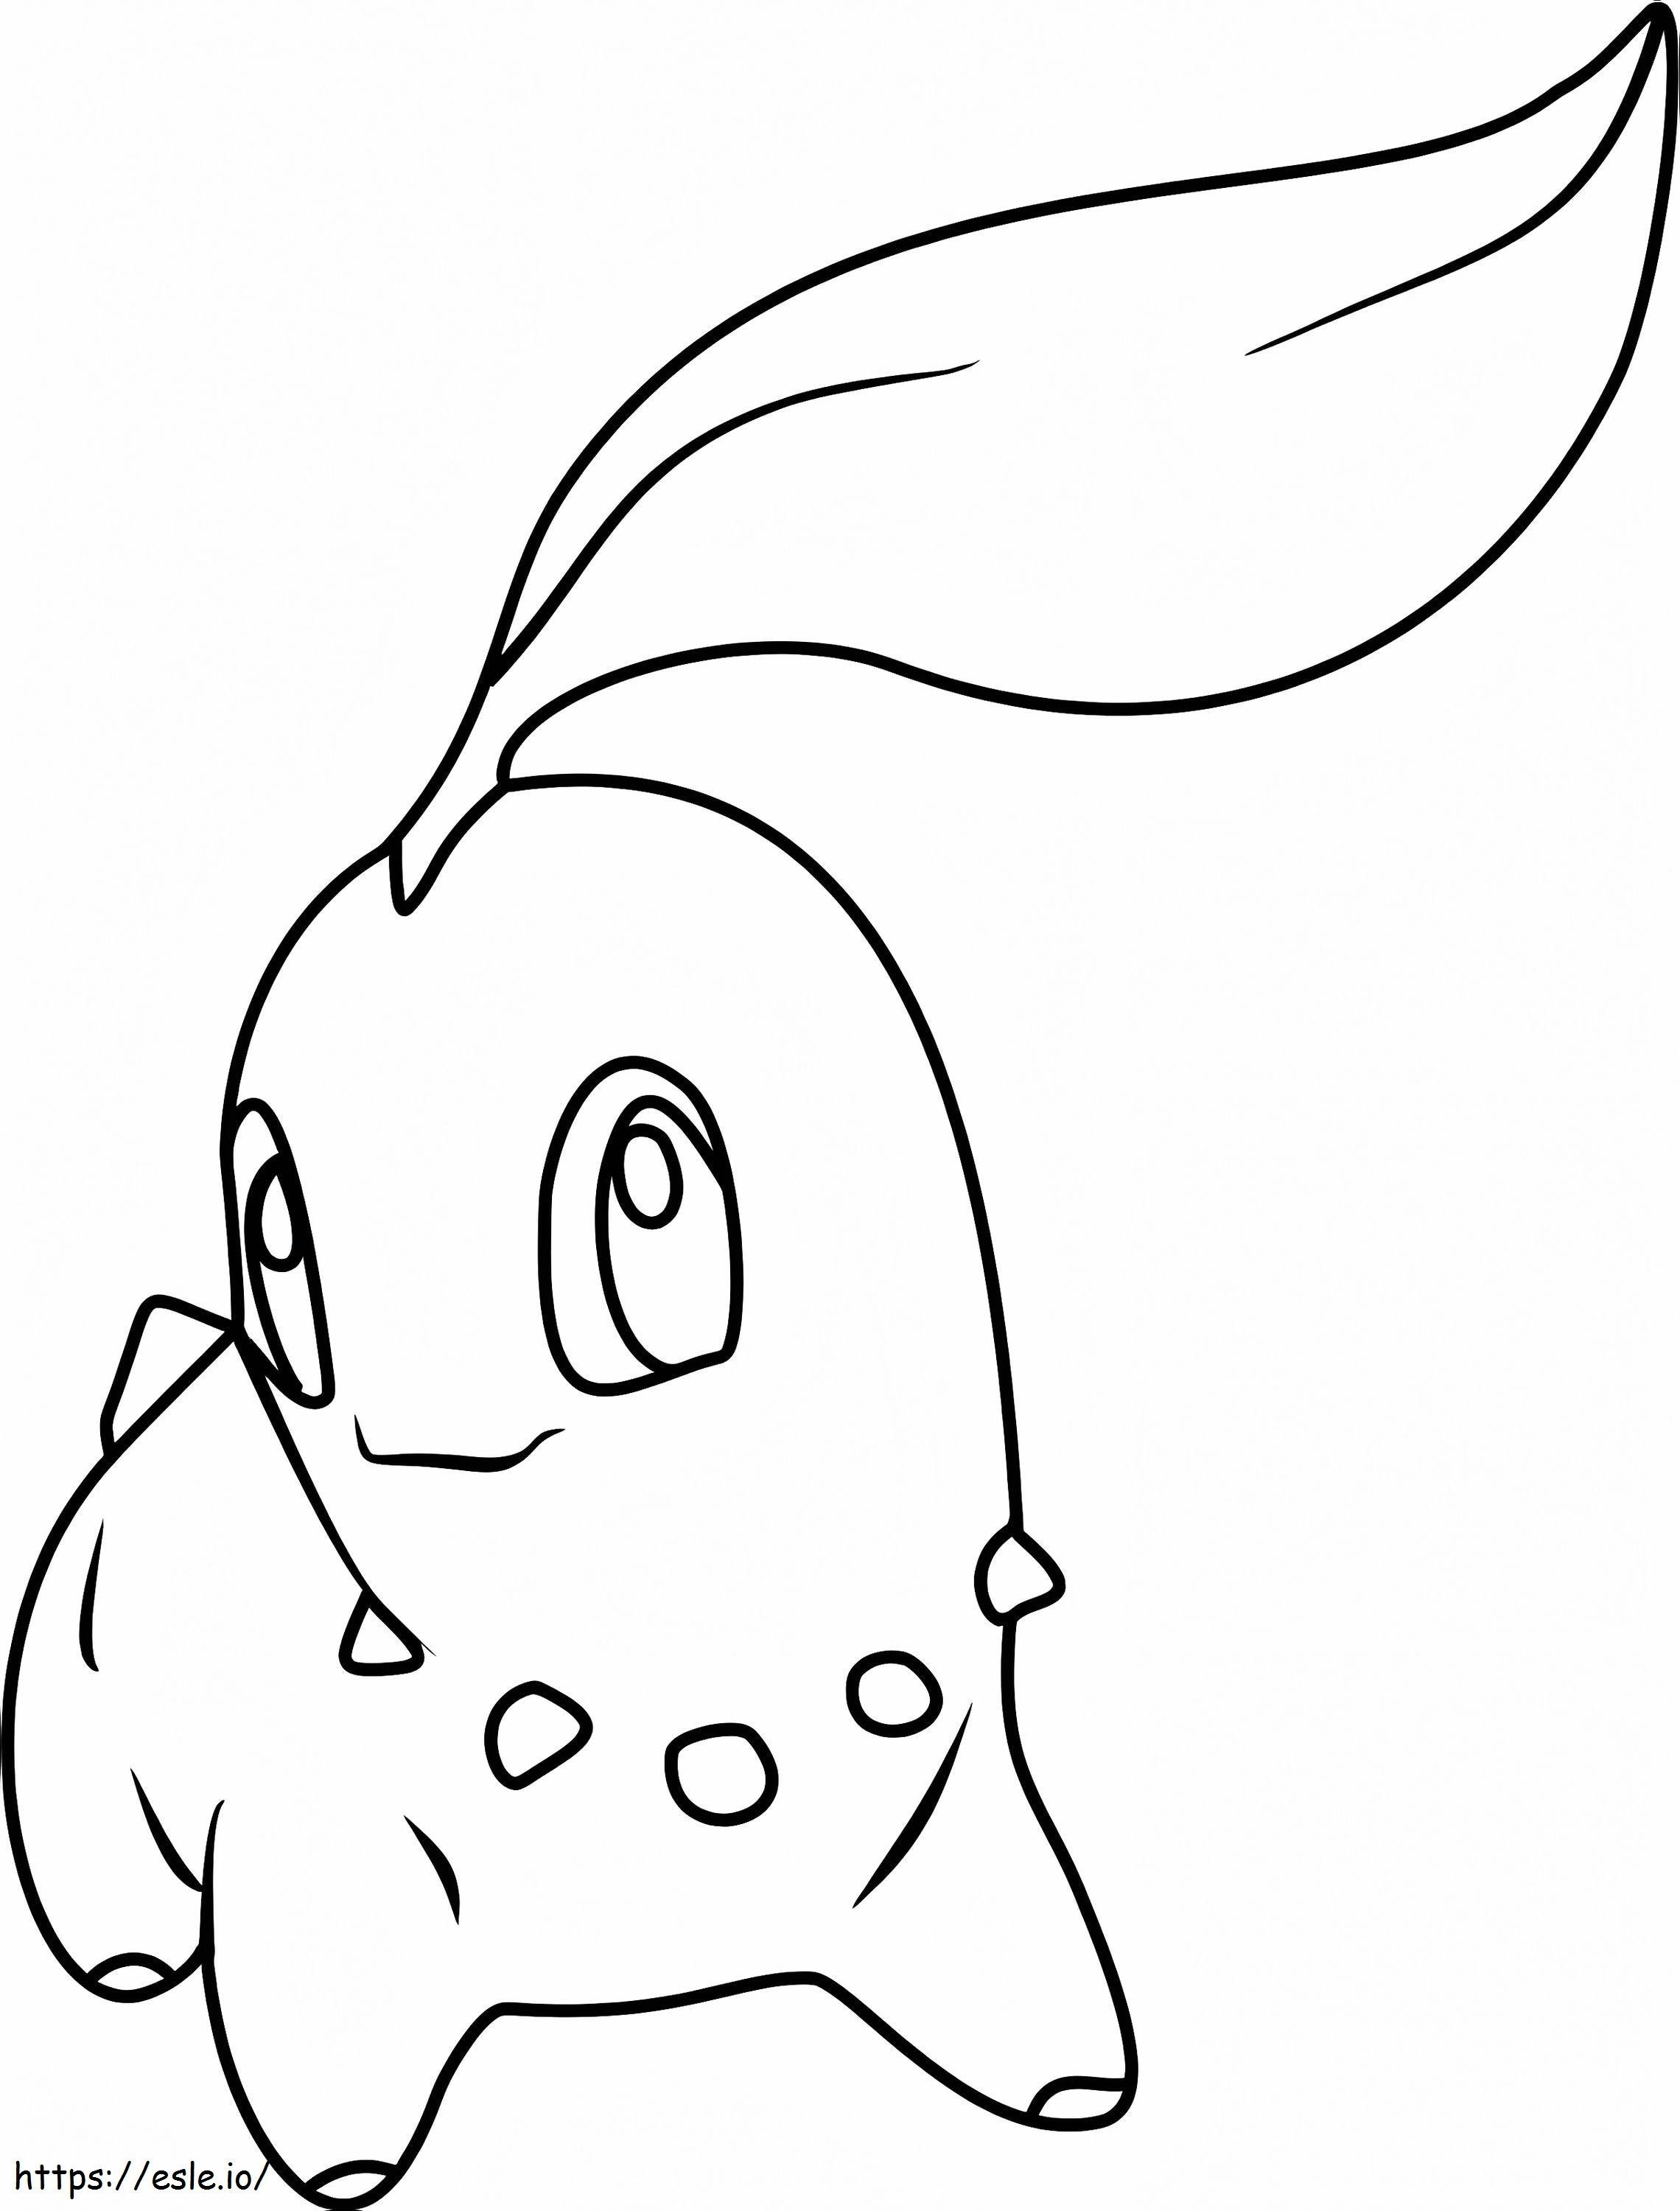 Chikorita Gen 2 Pokemon coloring page